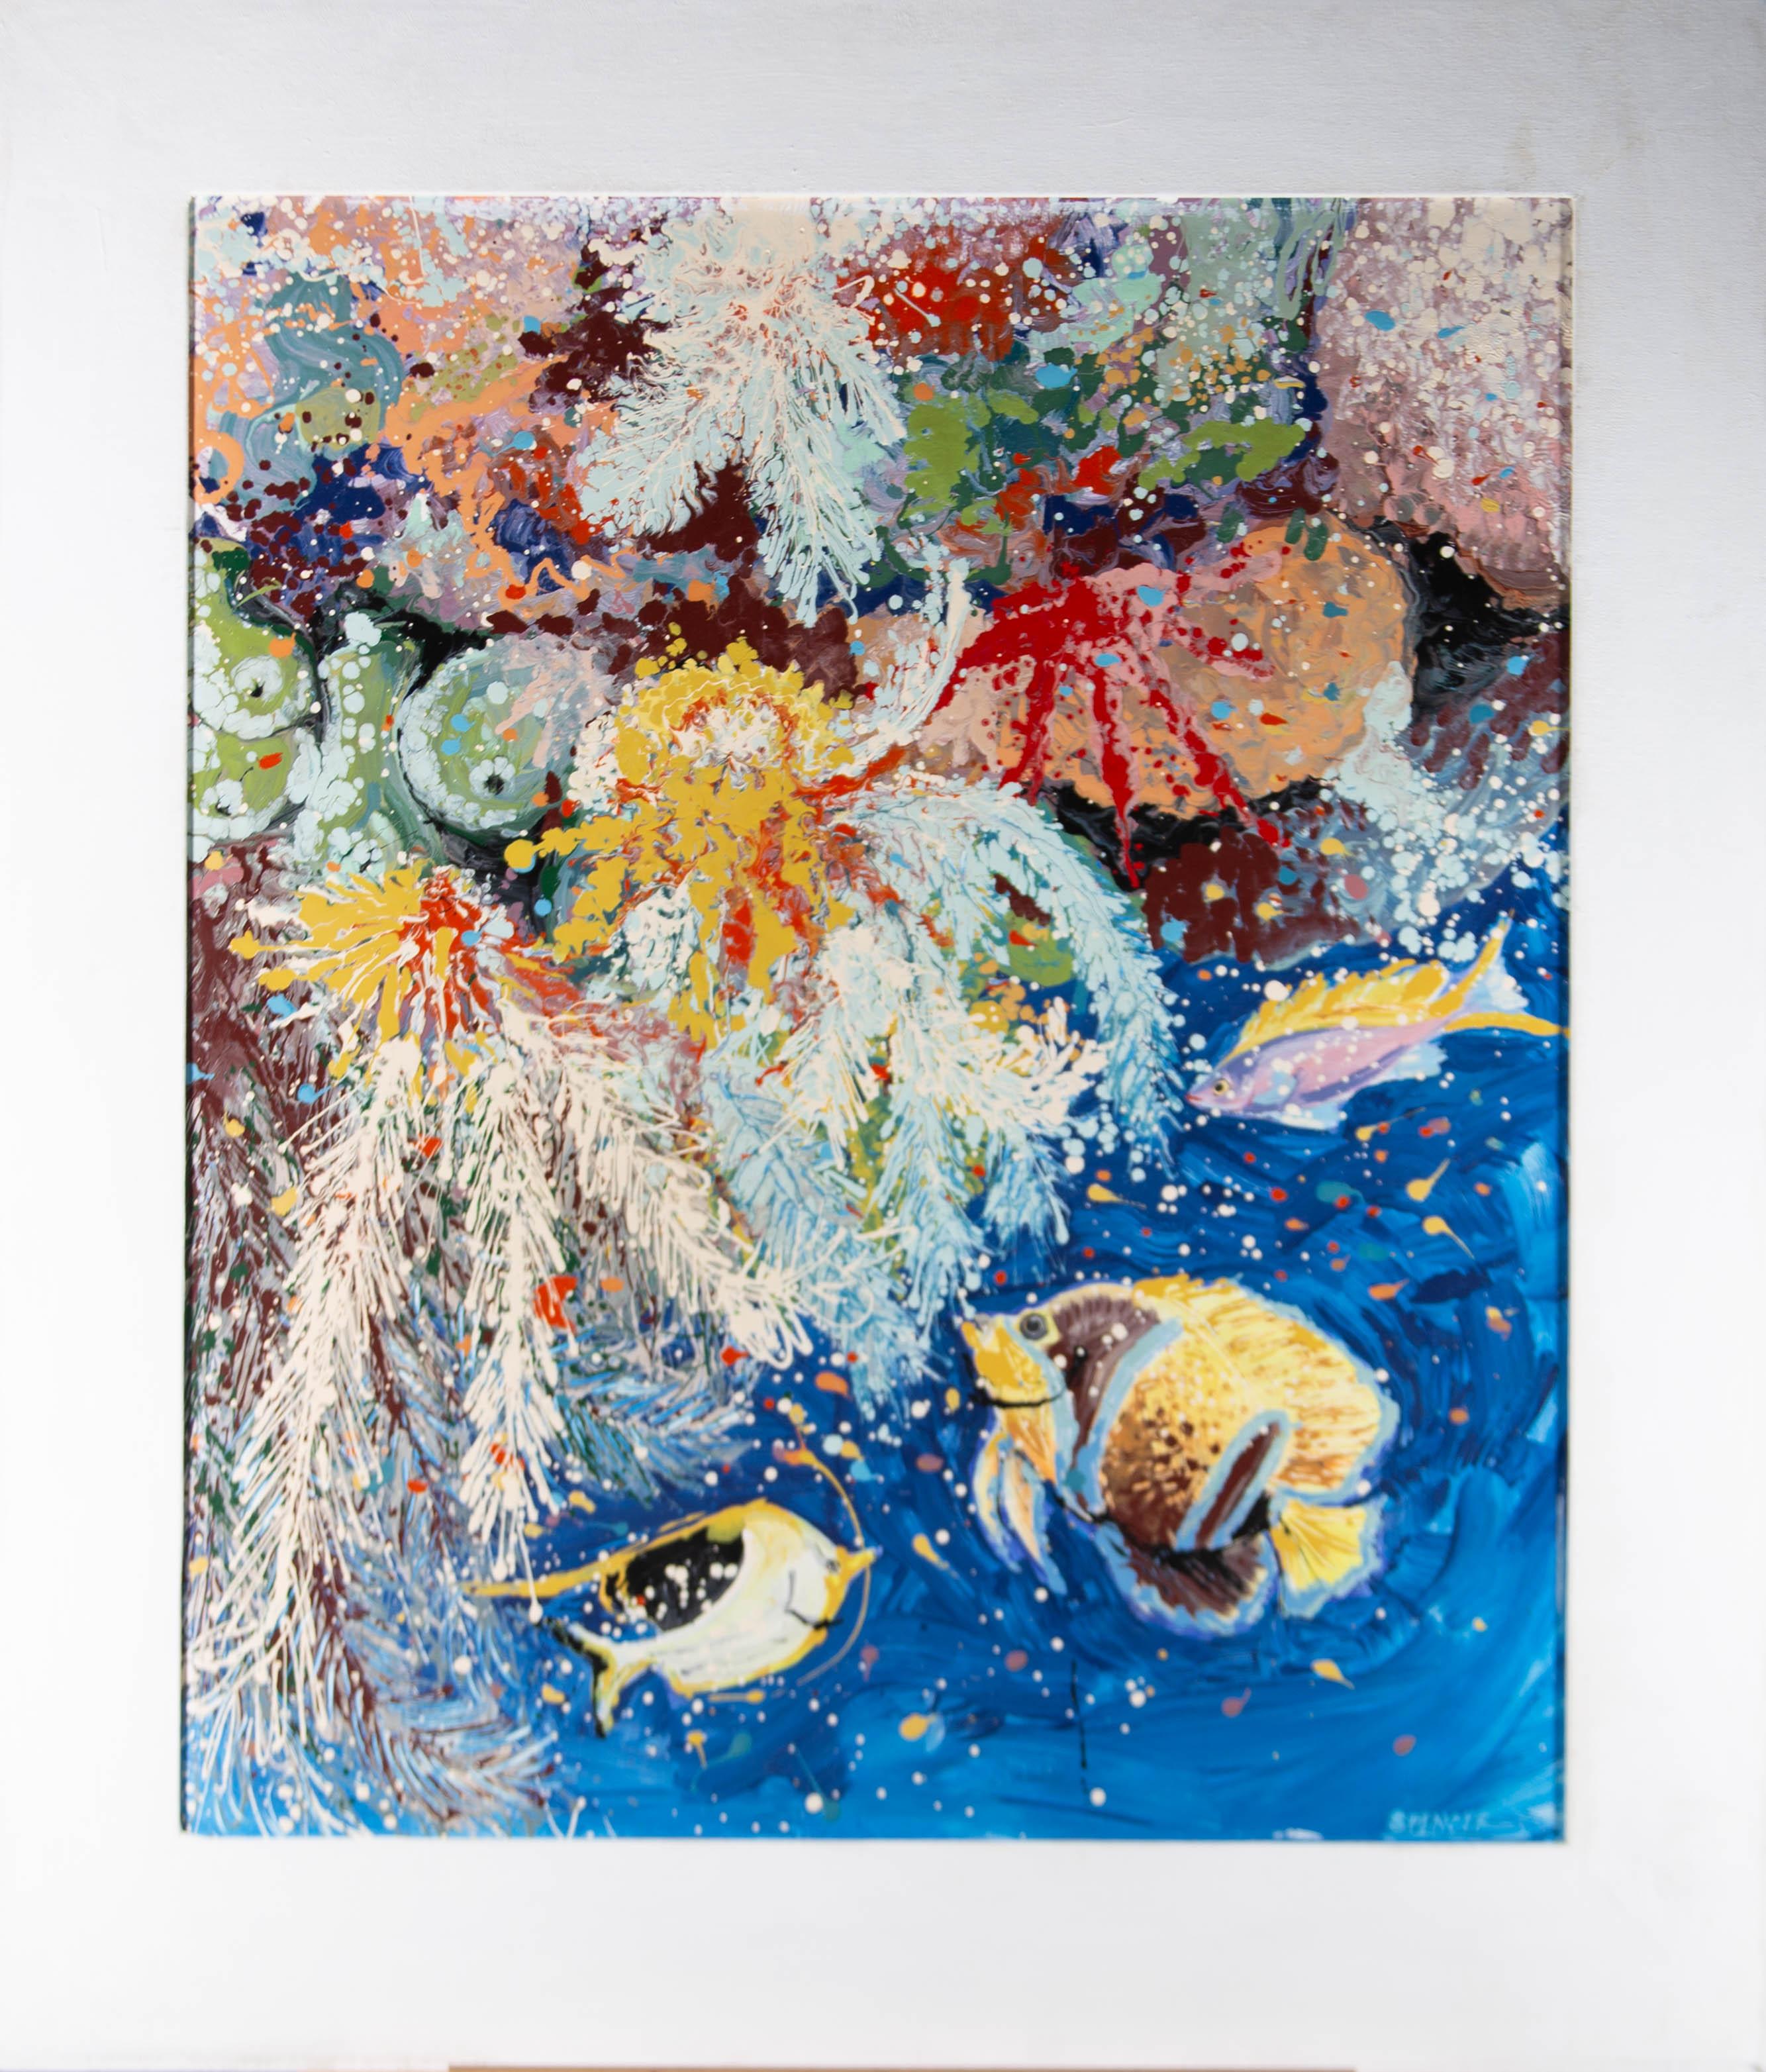 Die Emaillefarbe tanzt und wirbelt in einer Kakophonie von Farben und stellt eine Koralle dar, die vor Leben und Schönheit strotzt. Das Kunstwerk ist auf der Rückseite signiert und beschriftet und wird in einem weiß gekalkten Leinwandrahmen